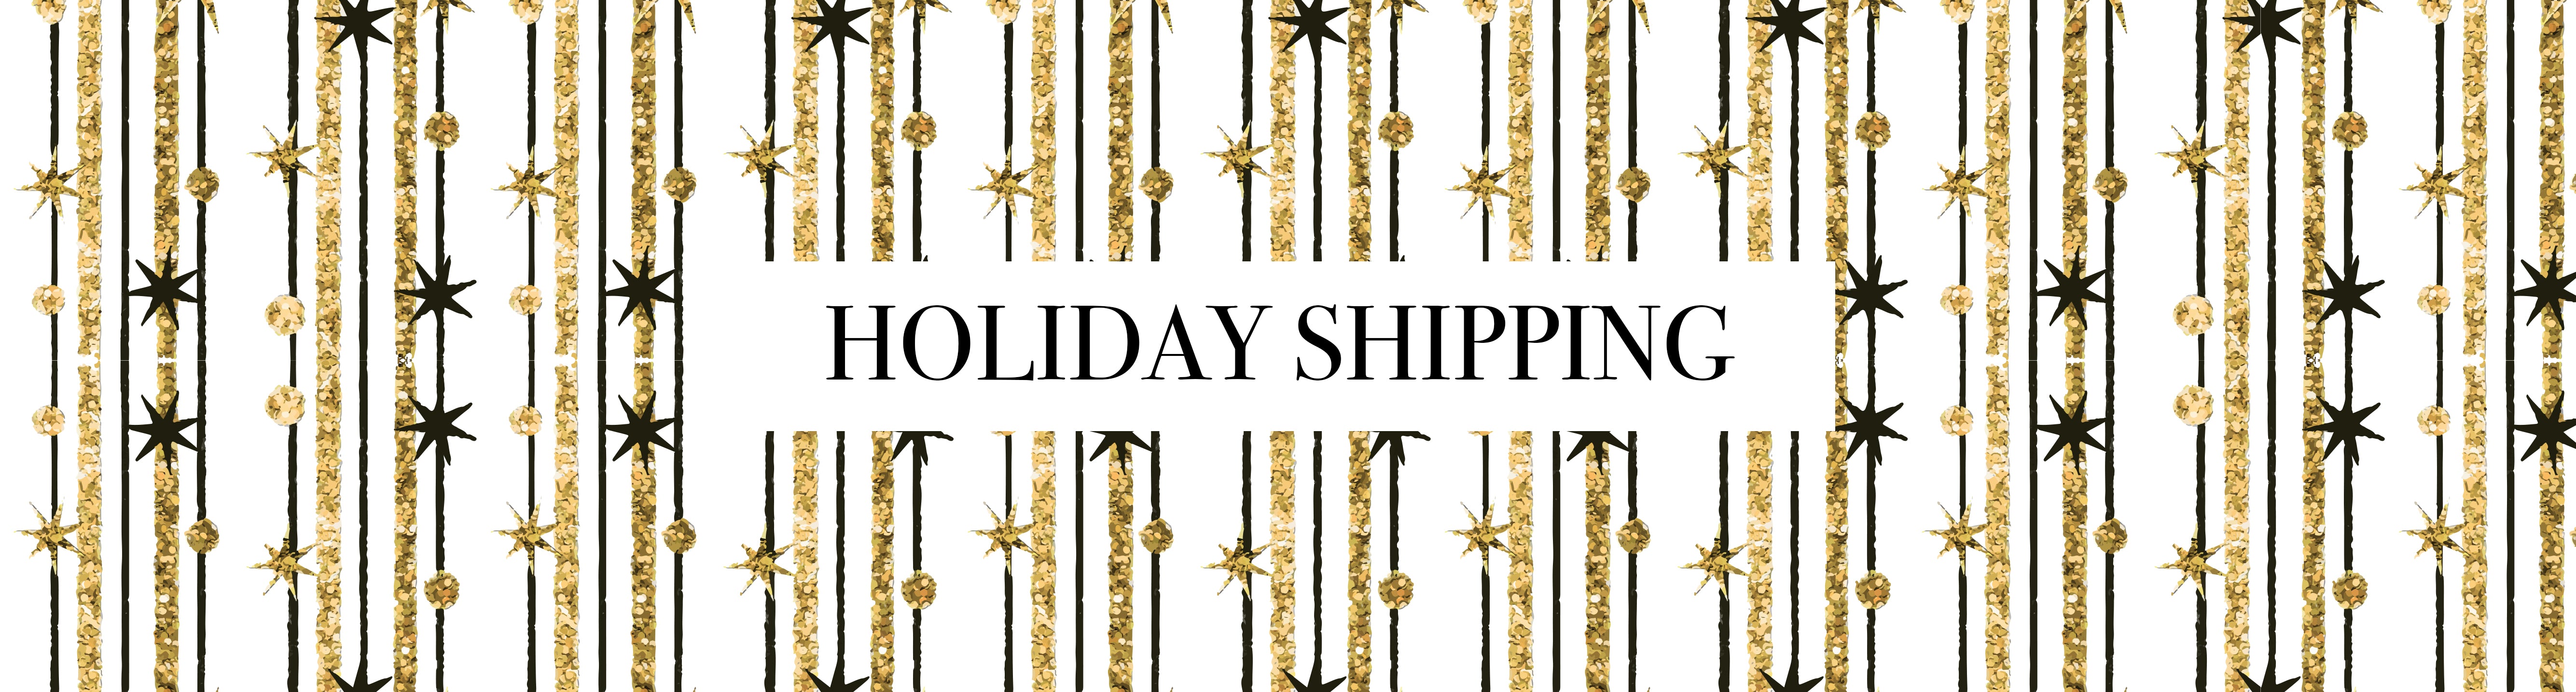 Holiday Shipping/Sales